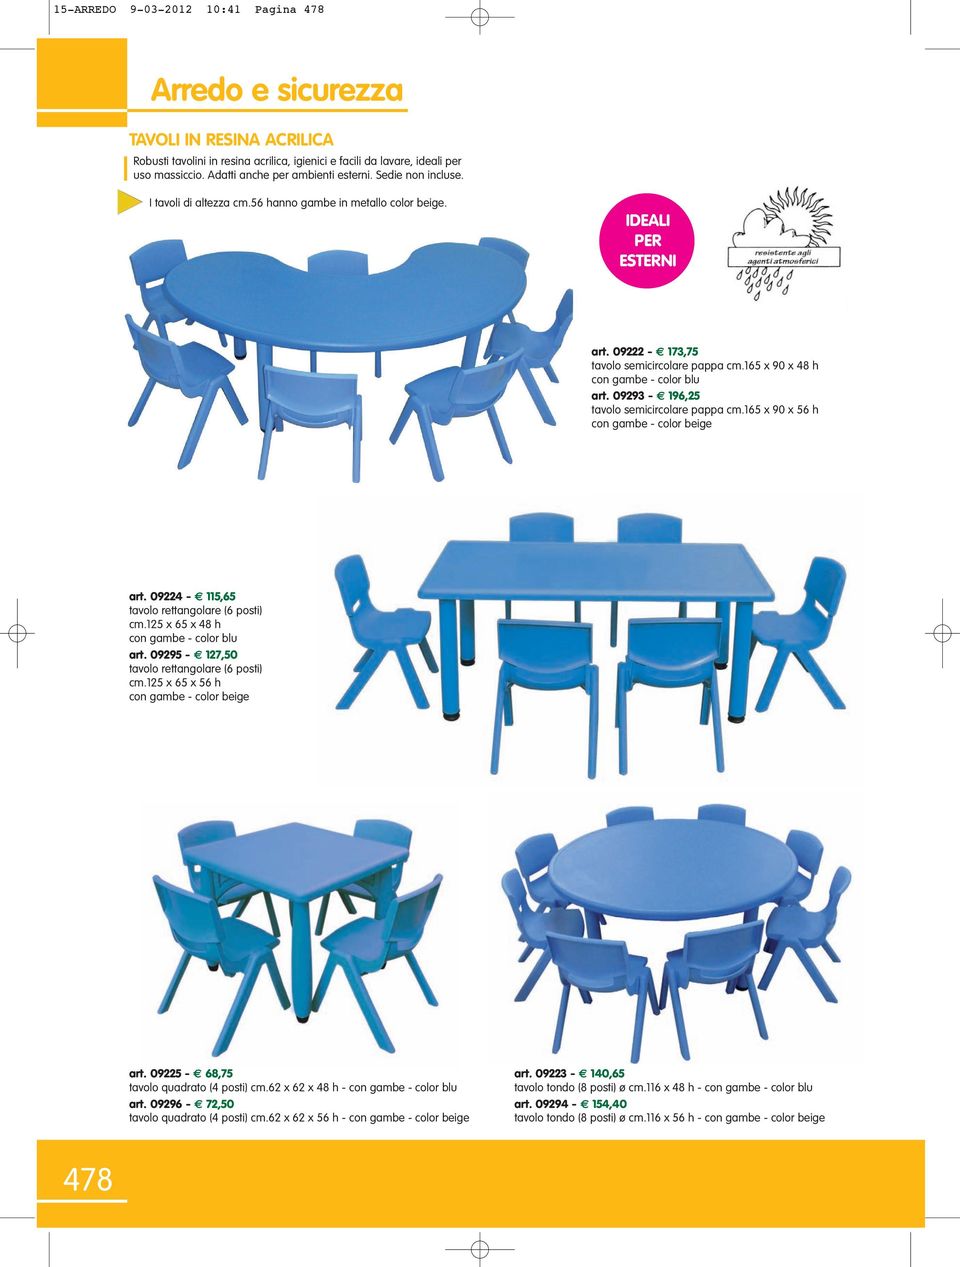 09293-196,25 tavolo semicircolare pappa cm.165 x 90 x 56 h con gambe - color beige art. 09224-115,65 tavolo rettangolare (6 posti) cm.125 x 65 x 48 h con gambe - color blu art.